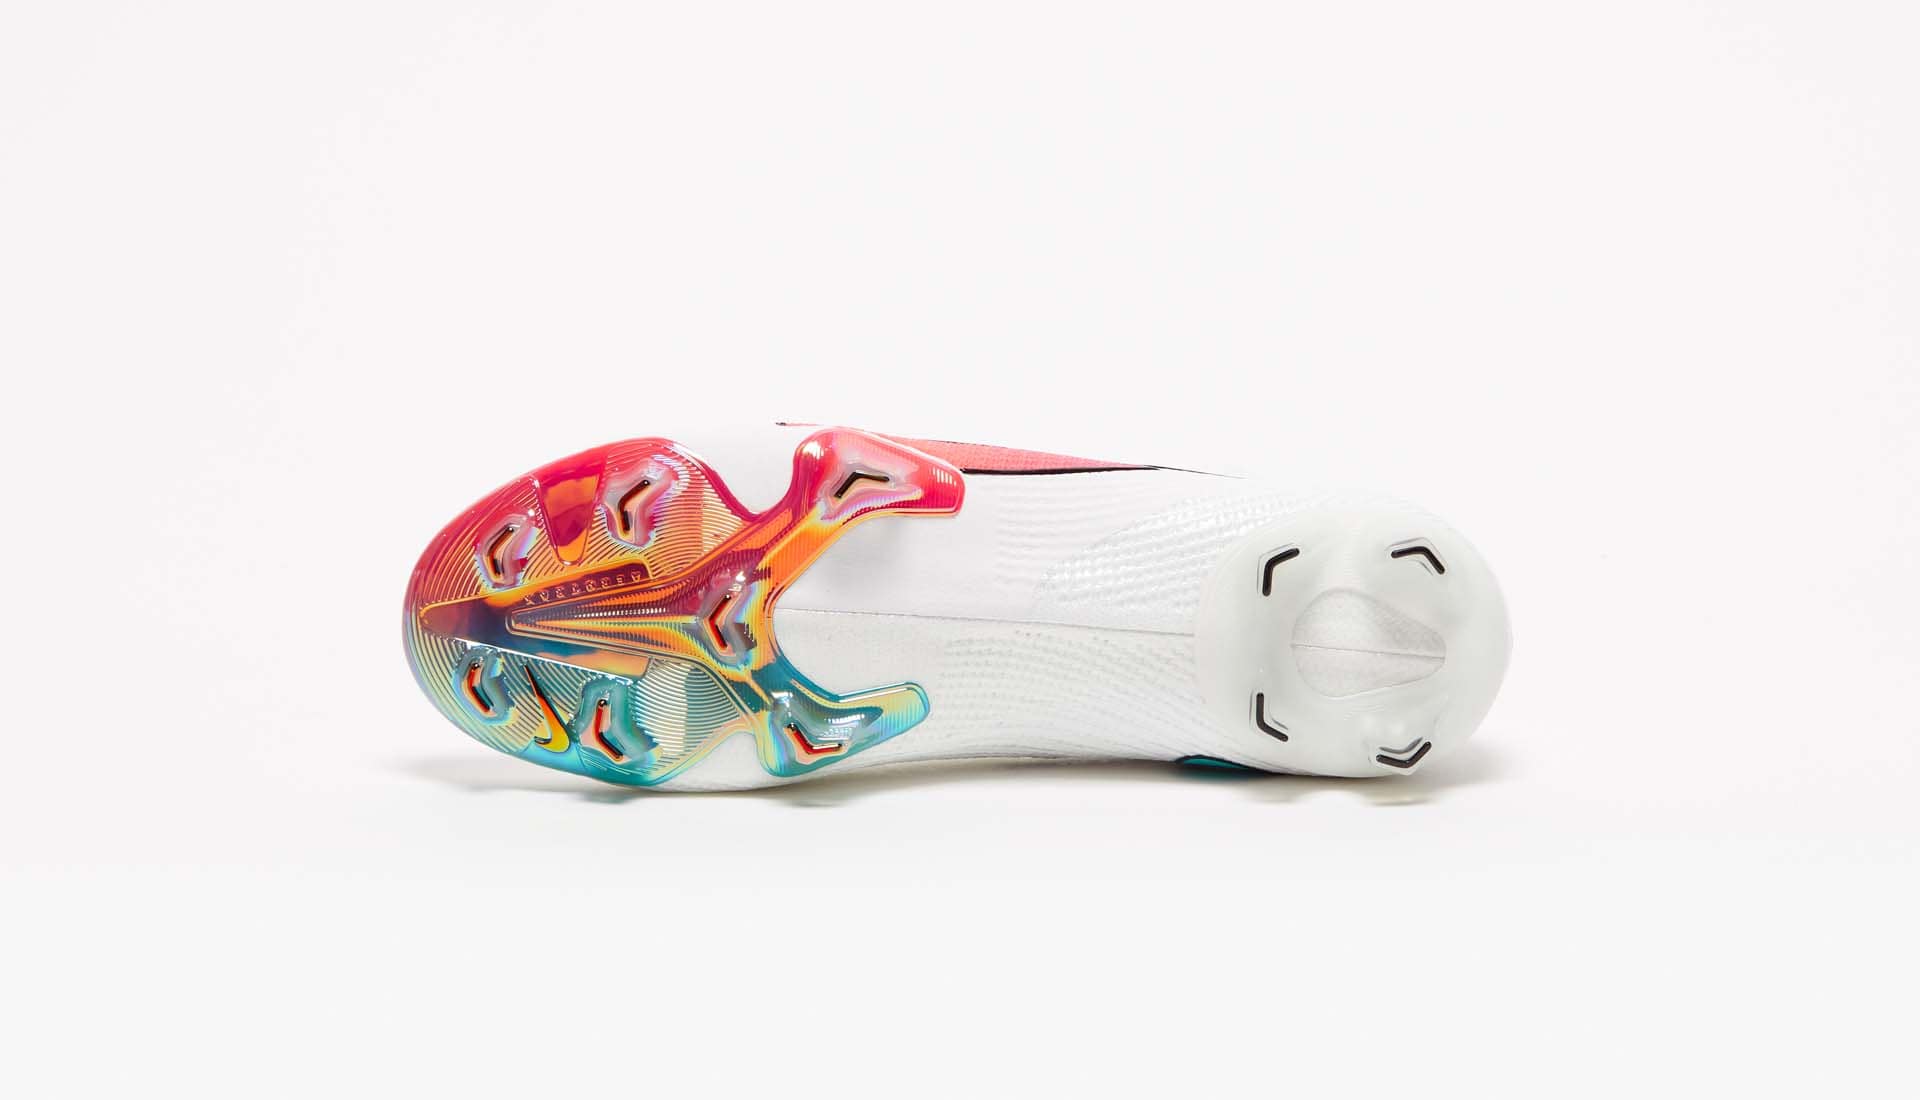 Thiết kế đế giày cũng được phân thành 2 màu của Nike Mercurial mới nhất